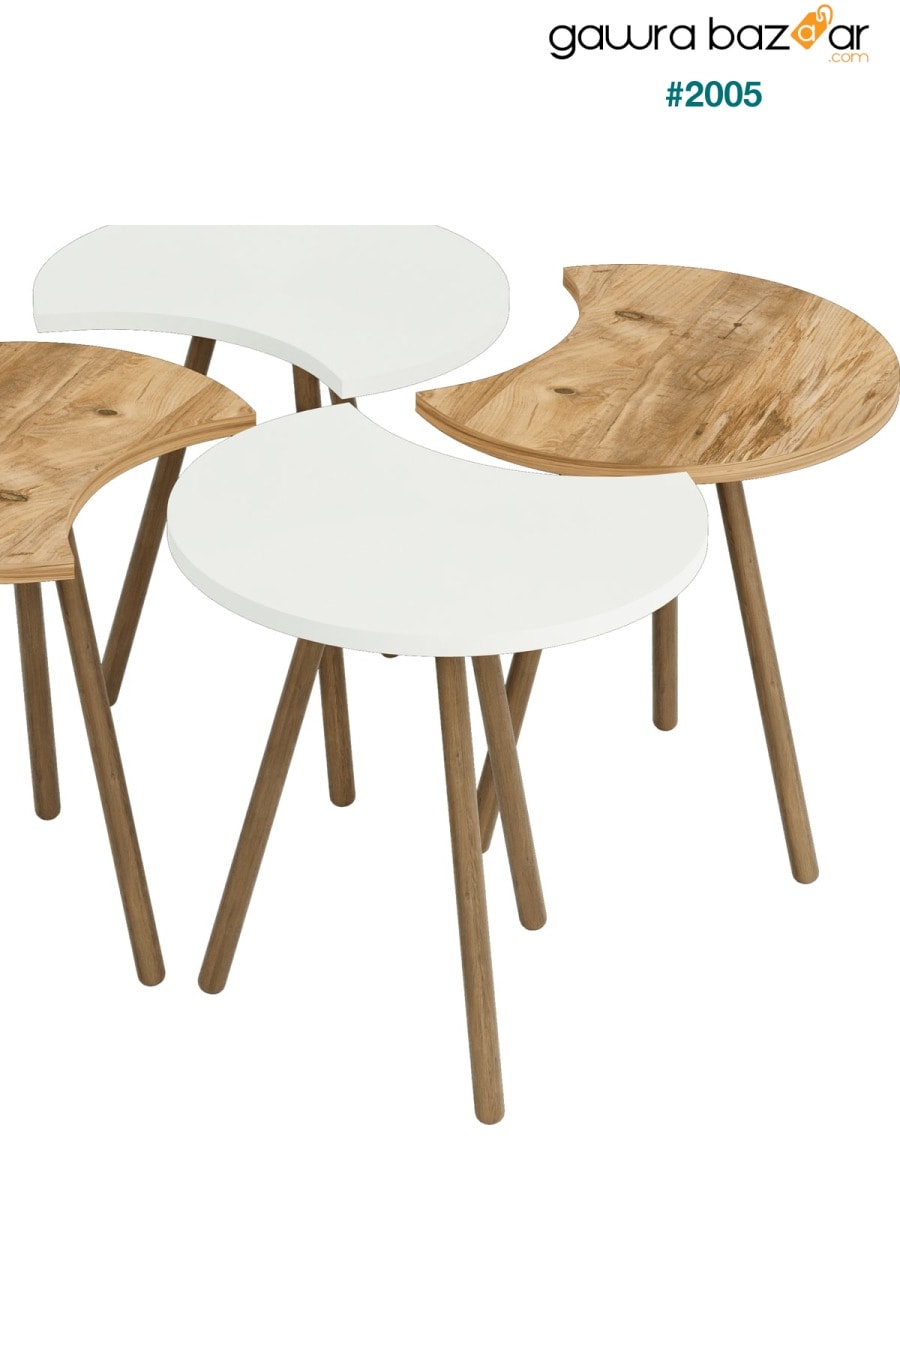 طاولة وسط بأربعة أرجل خشبية متداخلة متداخلة - أبيض أتلانتيكام interGO 2